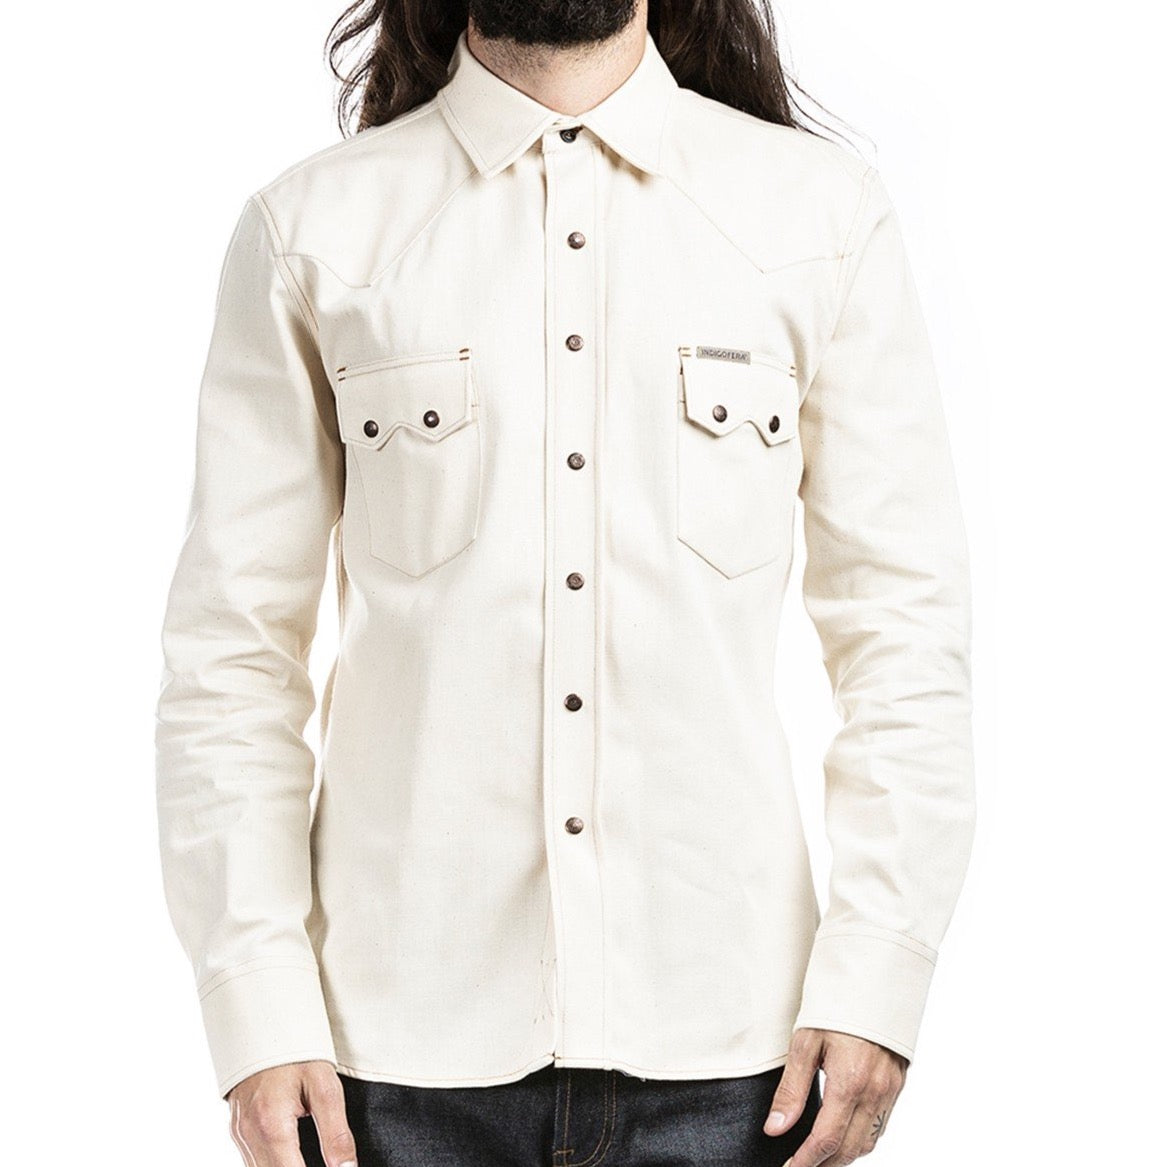 Indigofera - Ryman White Denim Shirt Japanese Denim